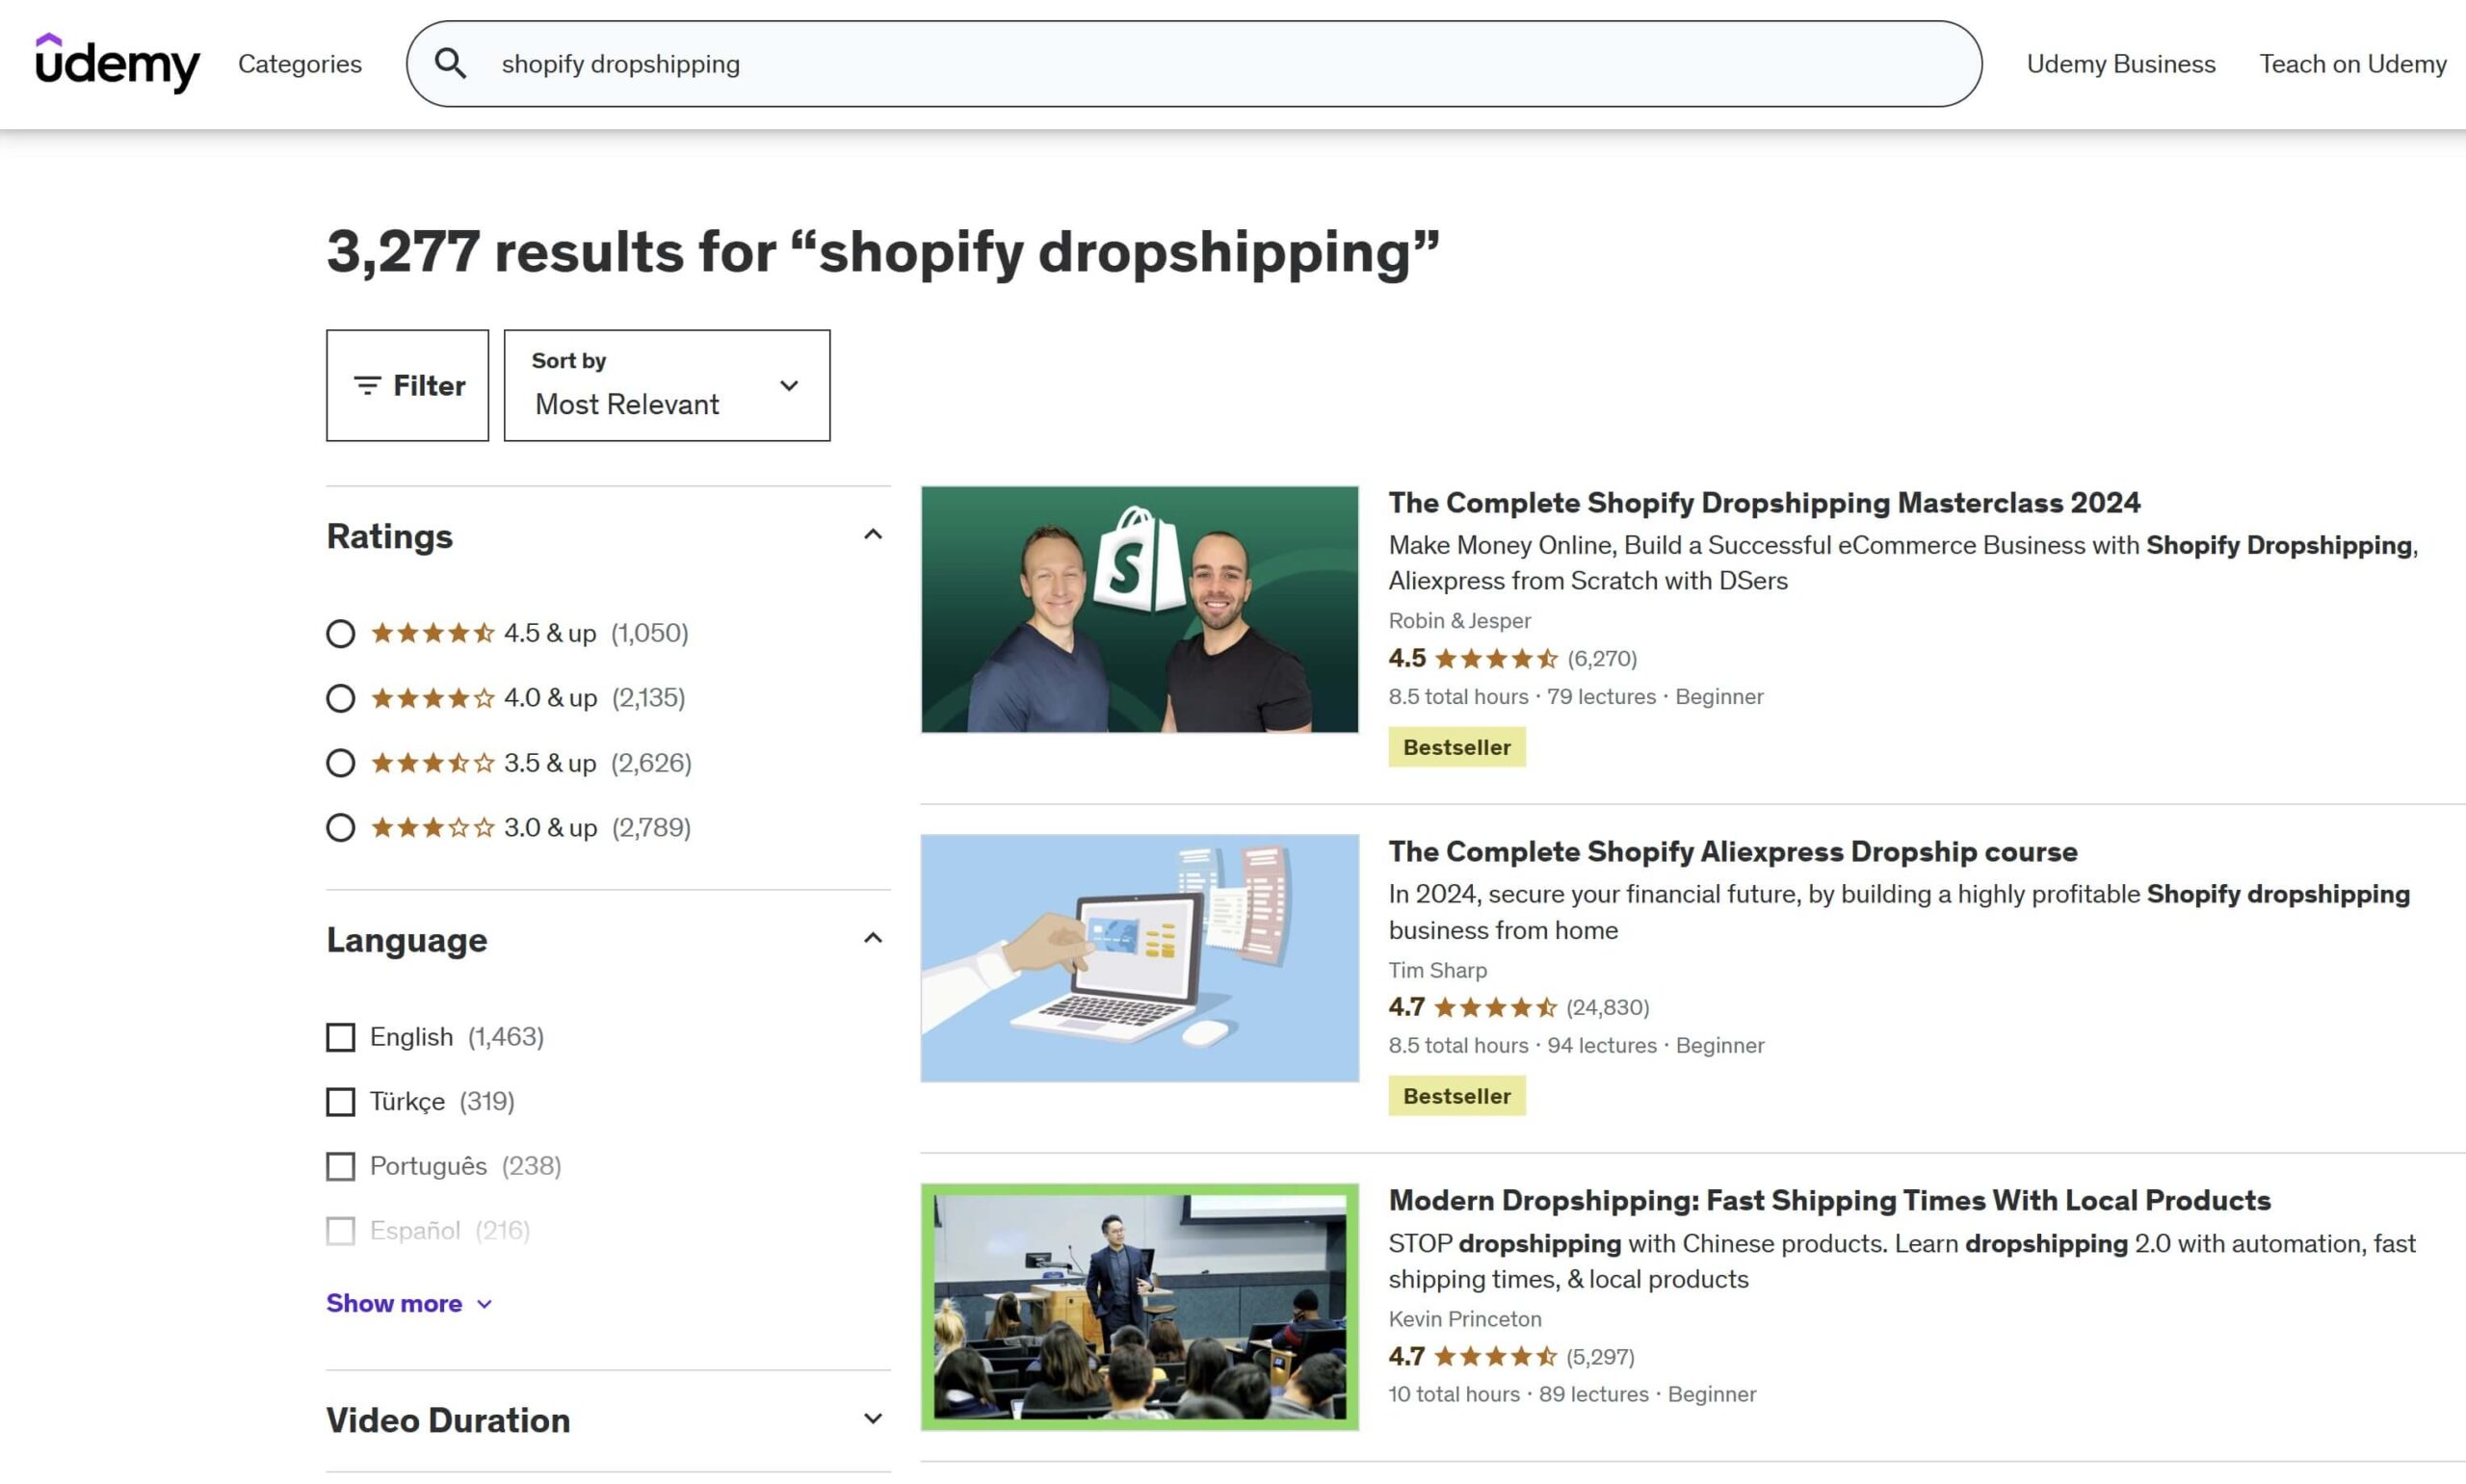 Résultats de recherche Shopify Dropshipping sur Udemy